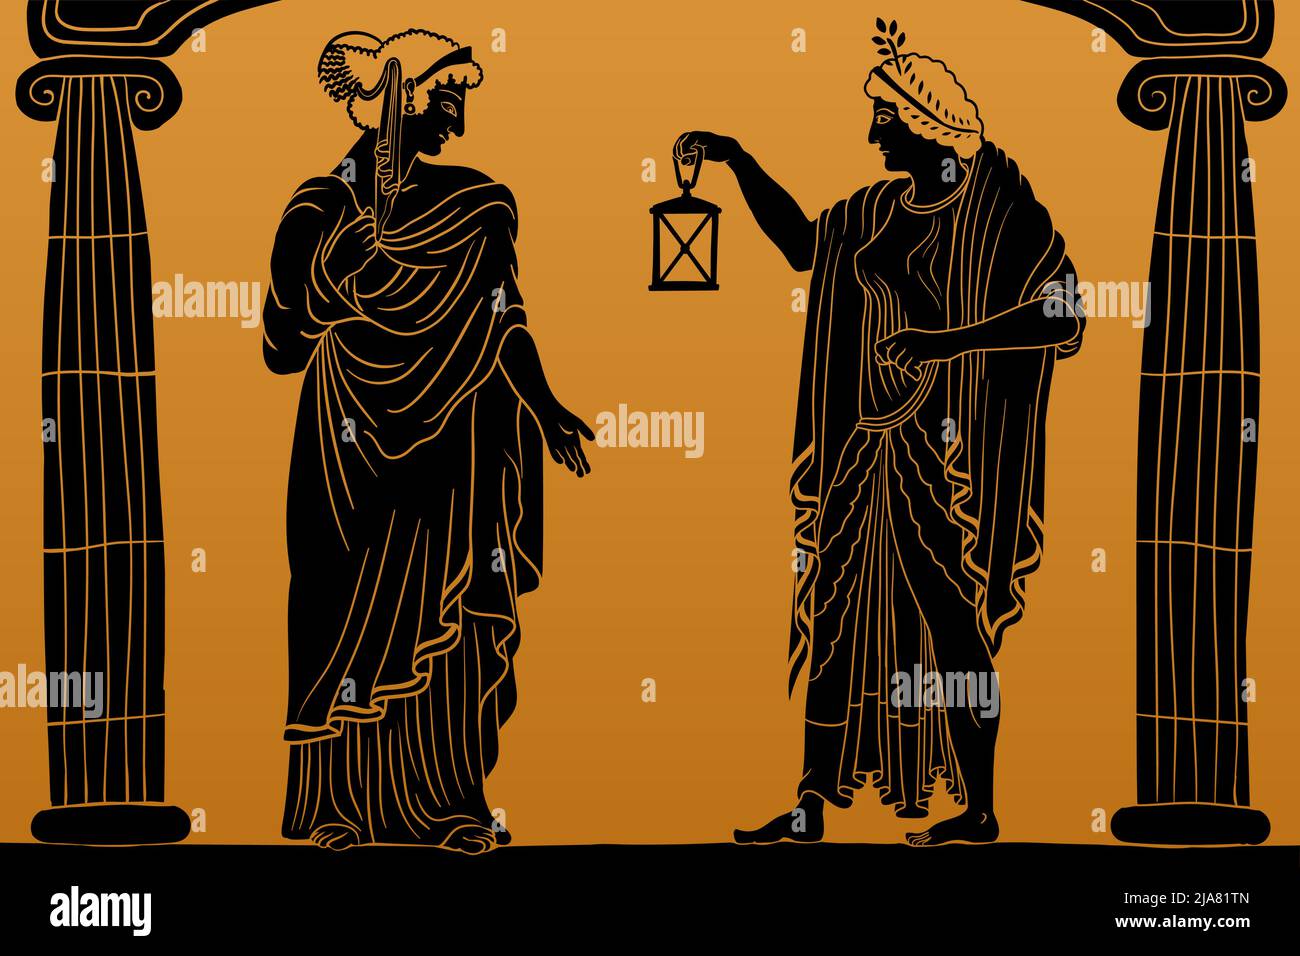 Zwei alte griechische junge Frauen mit einem Lorbeerkranz auf dem Kopf in einer Tunika und einem Umhang stehen zwischen zwei Säulen und halten eine Laterne in der Hand. Stock Vektor